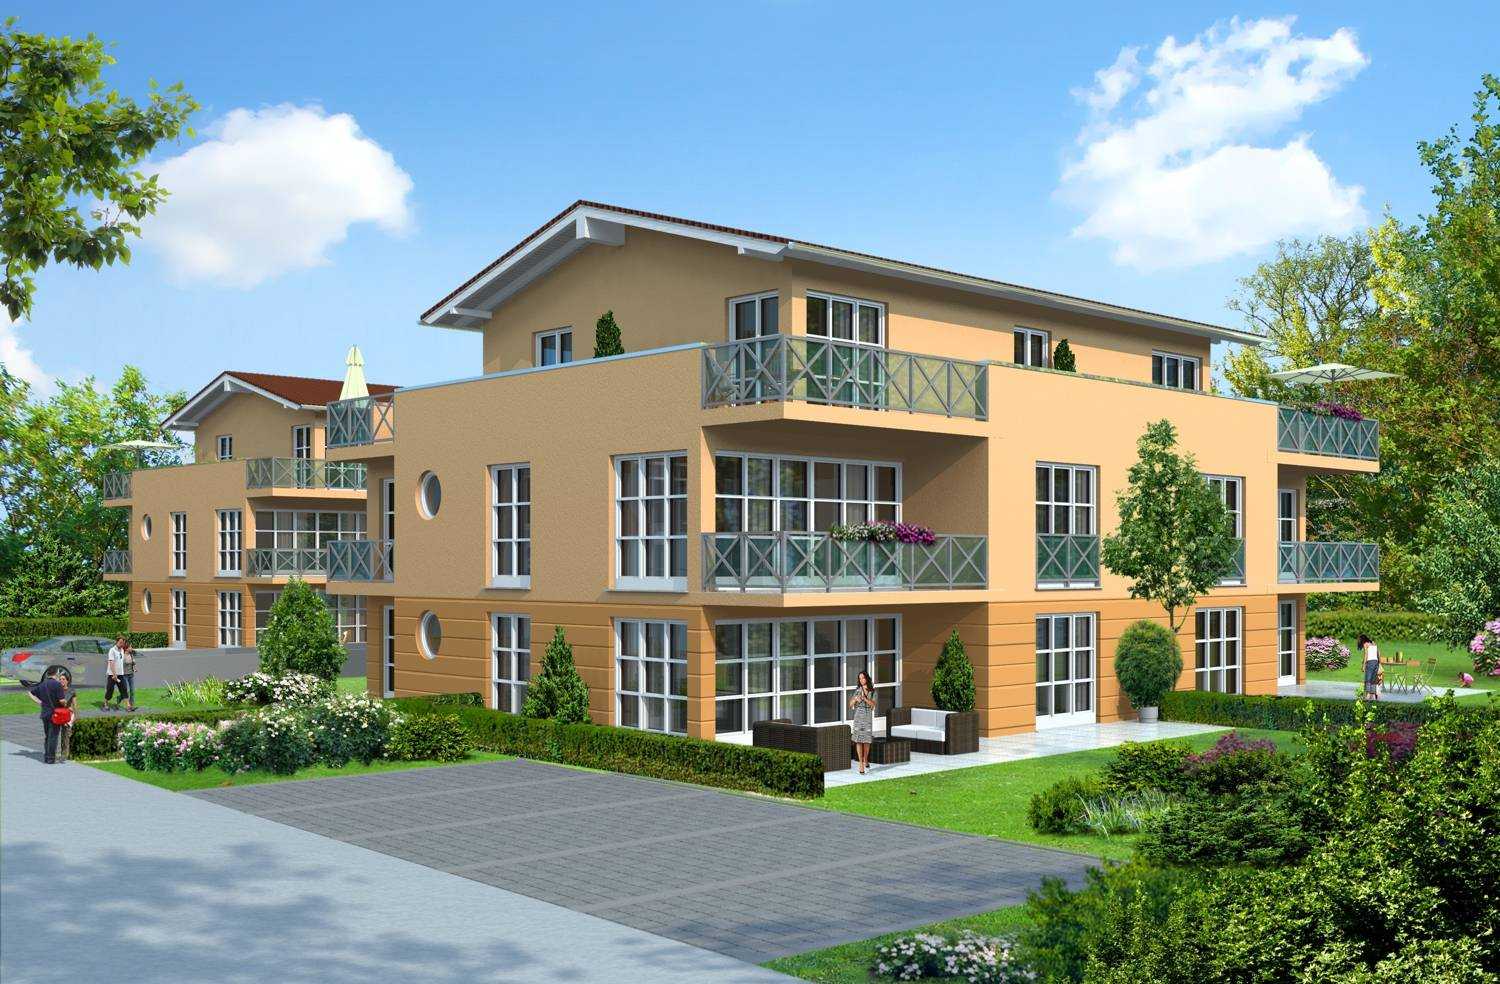 Architekturvisualisierung 3D-Perspektive Neubau einer Wohnanlage bestehend aus 2 Mehrfamilienhäusern für J+G Werbegesellschaft mbH / D-82140 Olching (Jahr 2011)